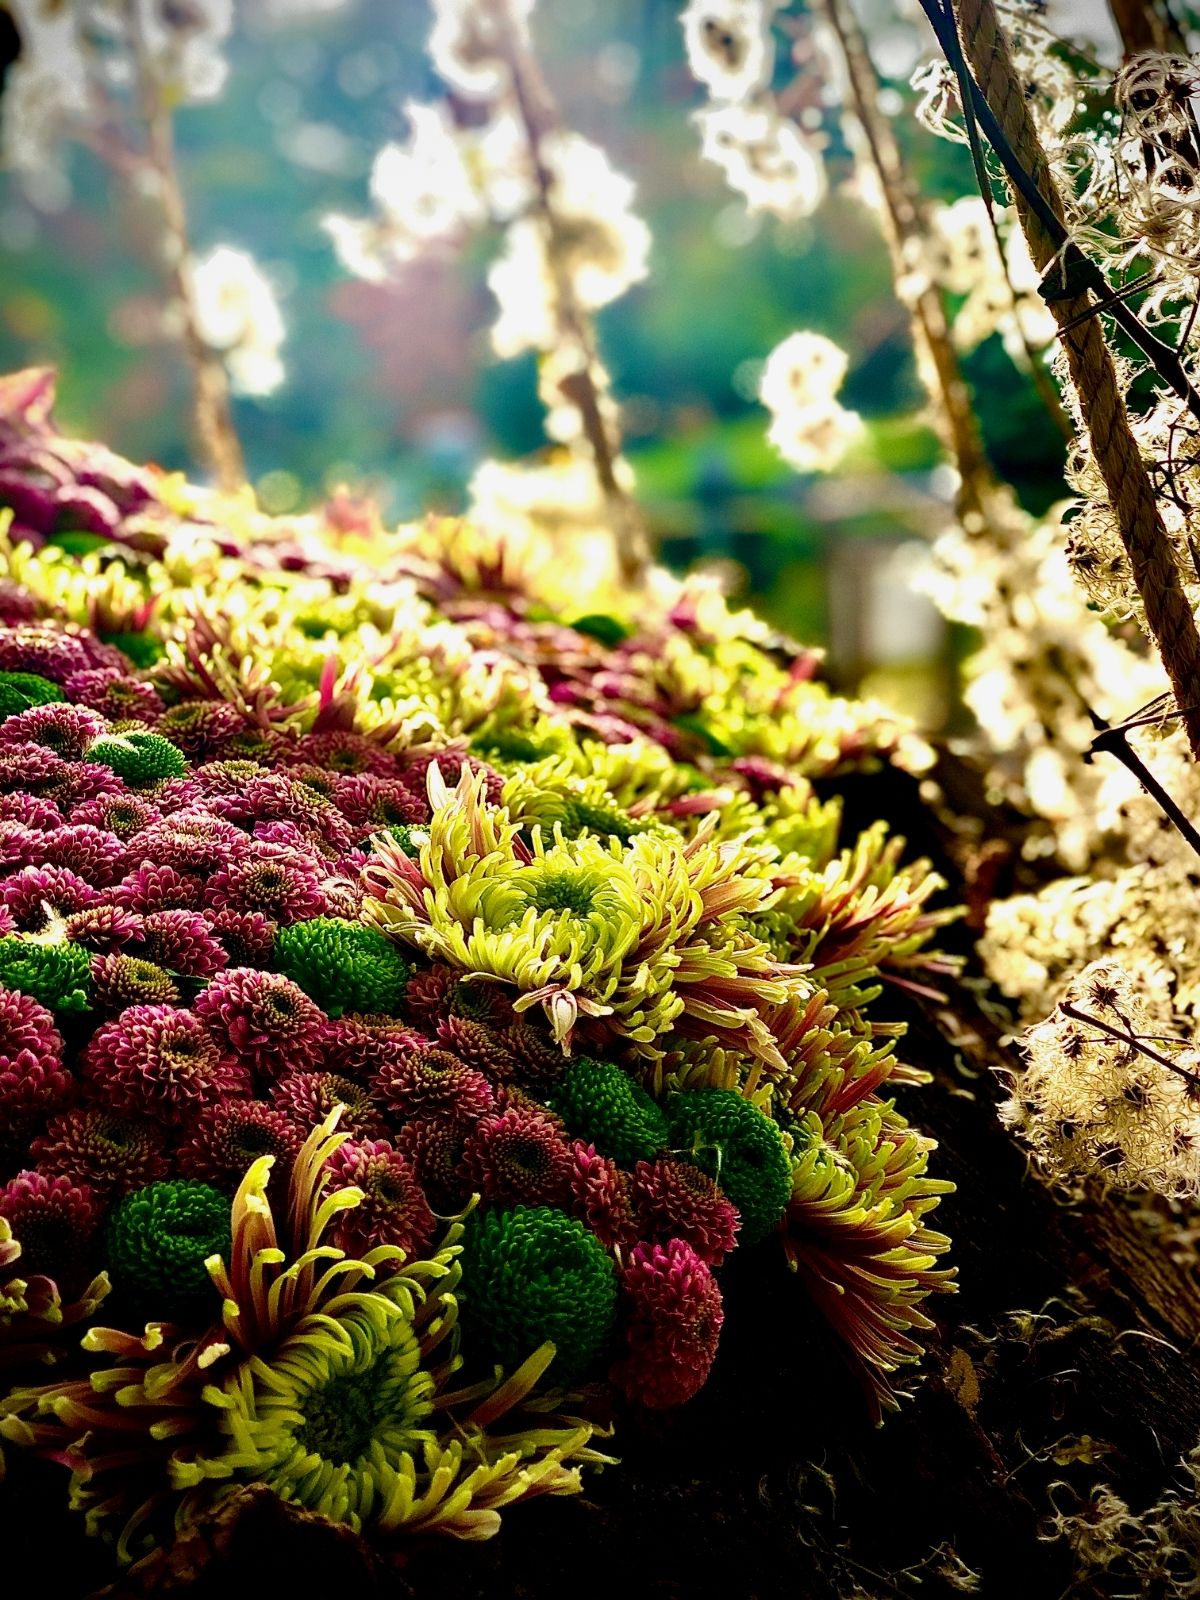 Design Japanese Garden 4 Haiku in bloom by Tom de Houwer  flowers Just Chrys  - Blog on Thursd